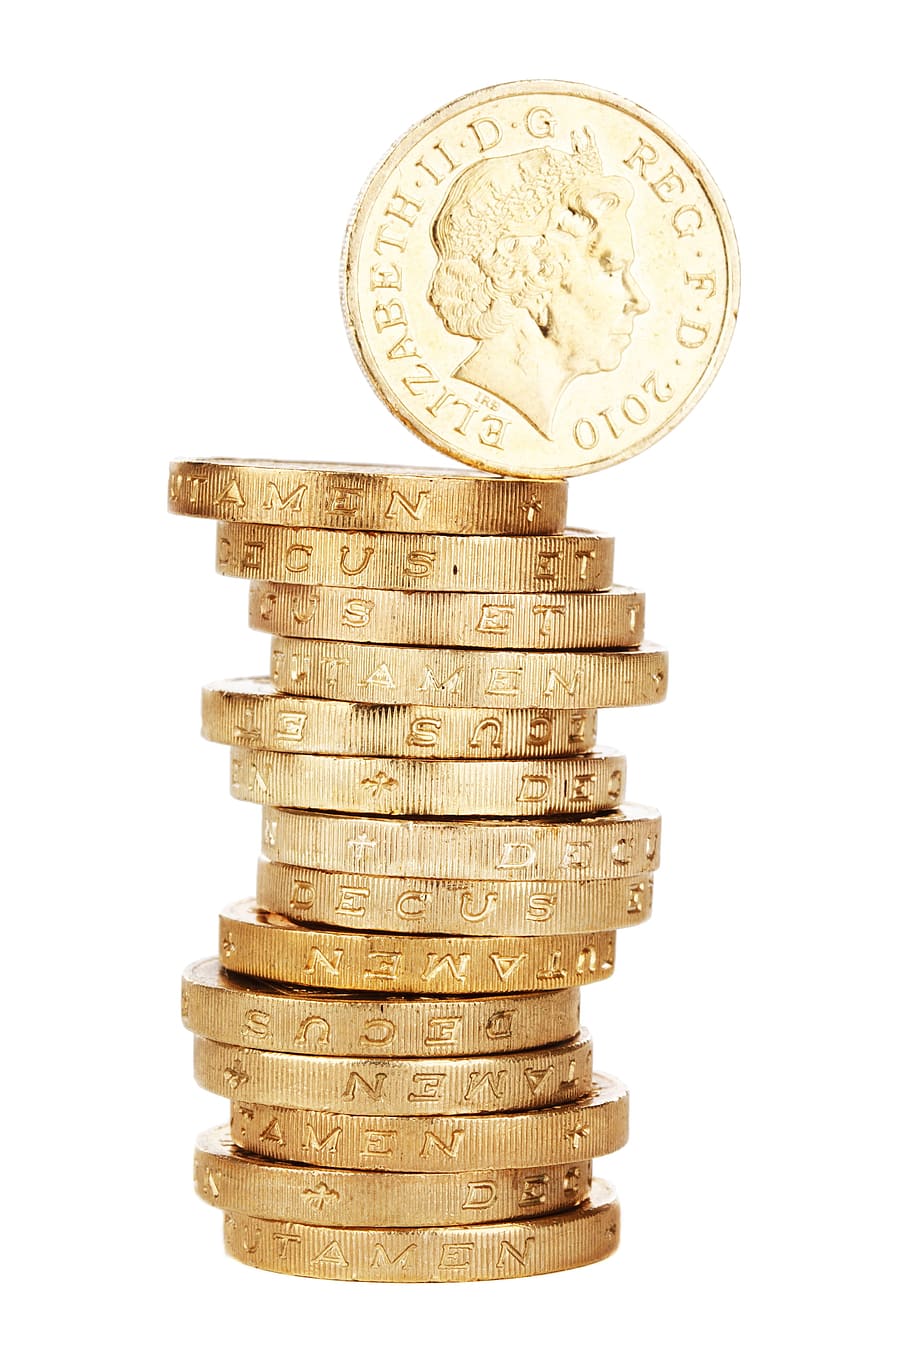 británico, libra, moneda, objeto, dinero, negocios, finanzas, foto de estudio, fondo blanco, pila